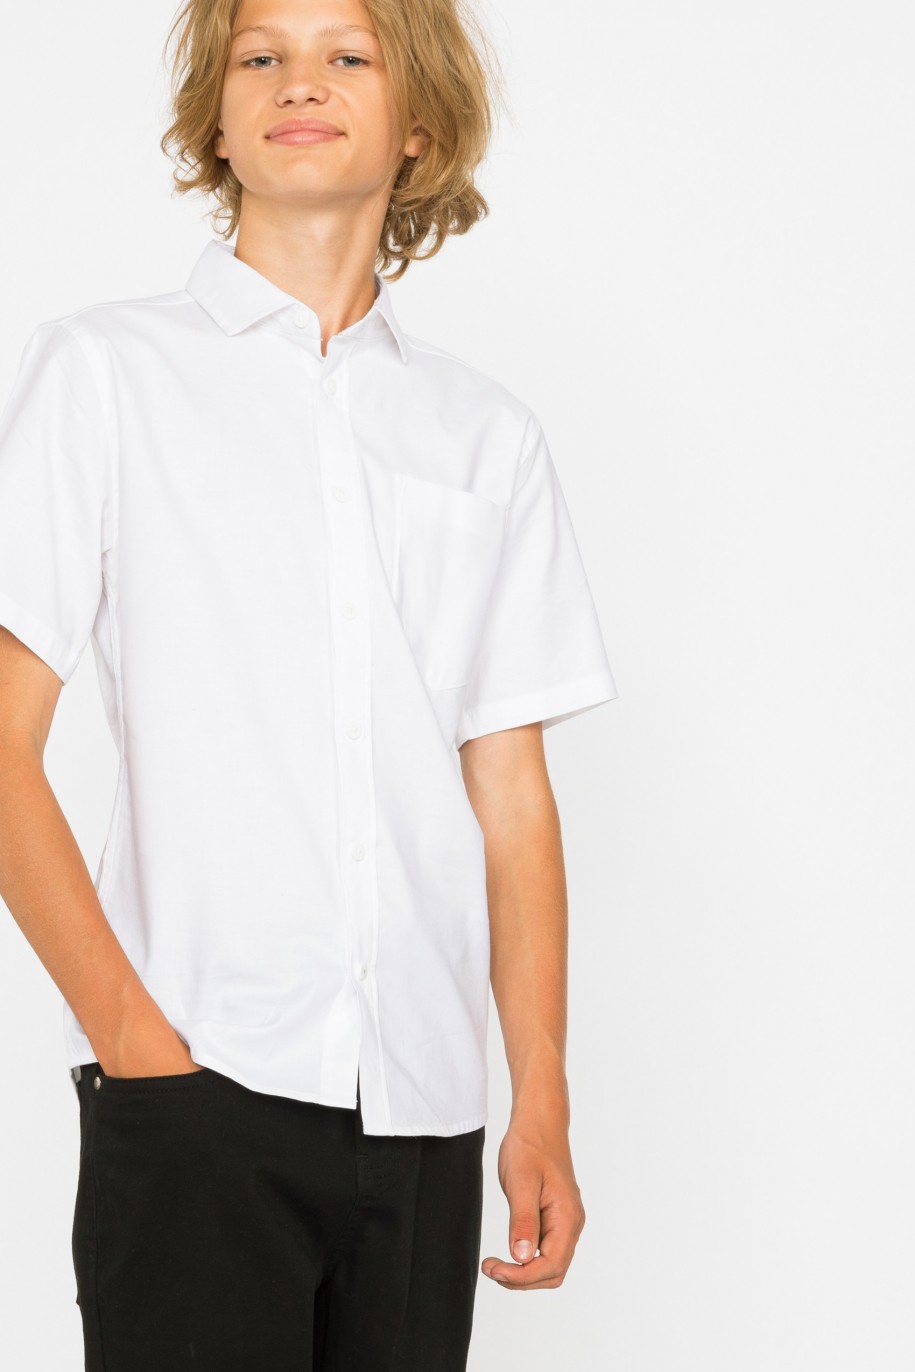 Biała klasyczna koszula z krótkim rękawem dla chłopaka - 29270